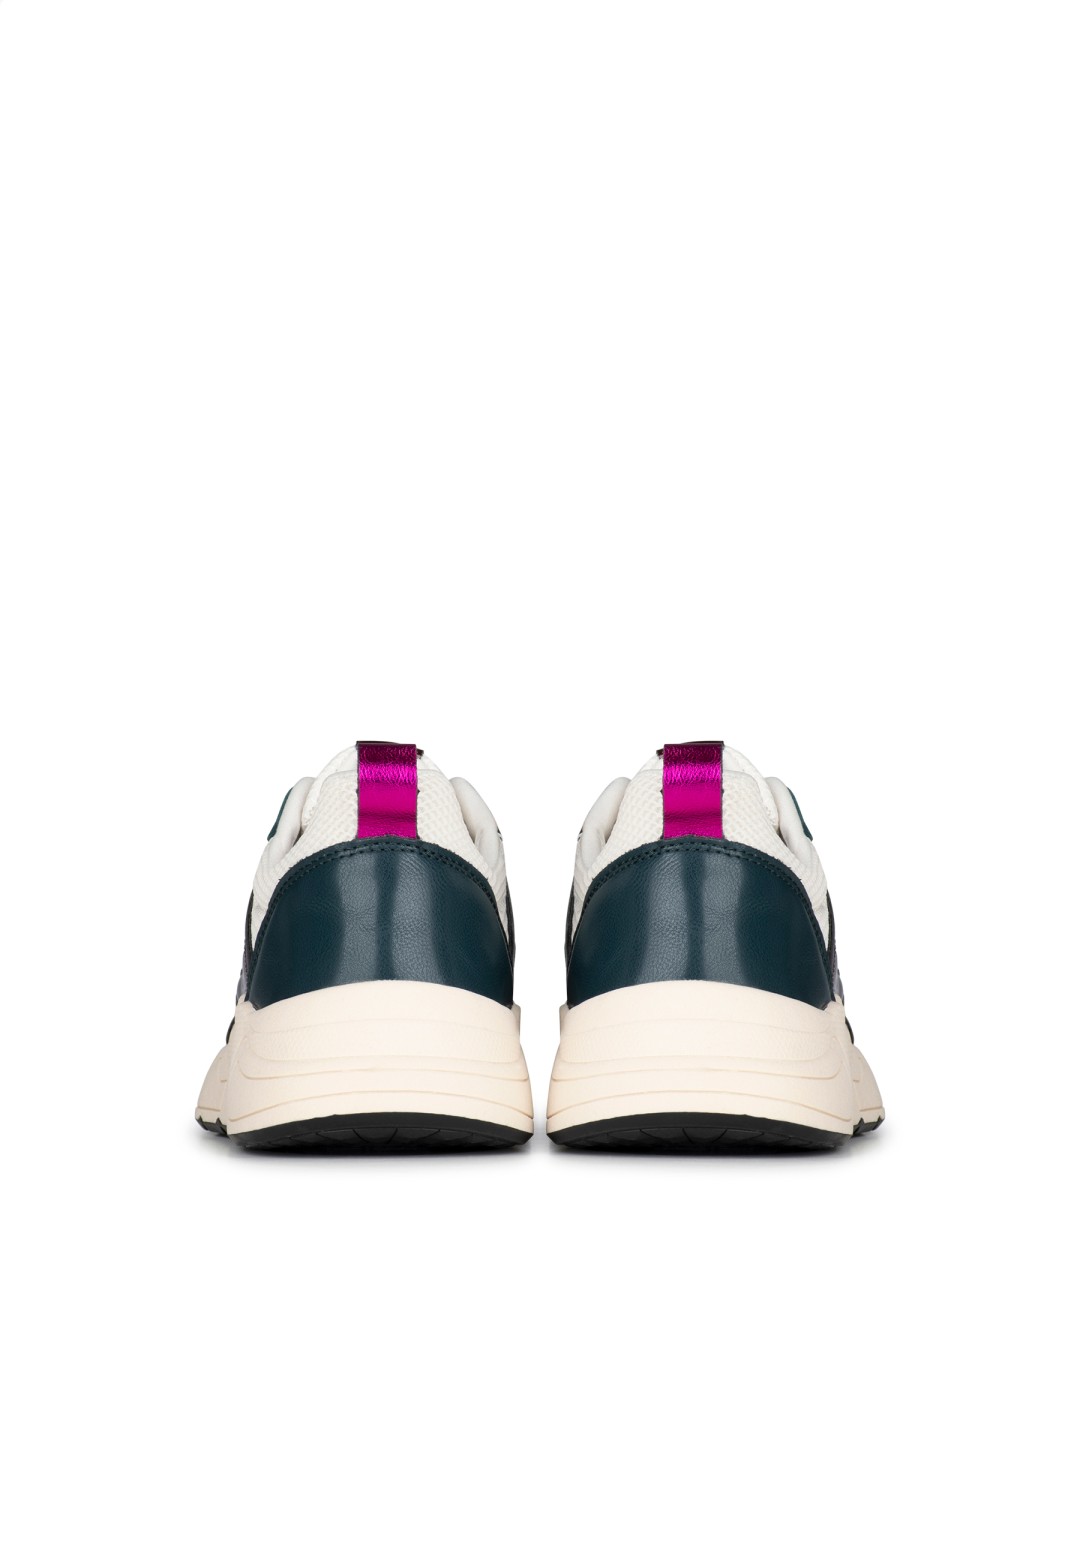 POSH by Poelman Dames Carocel Sneakers | De officiële POELMAN webshop